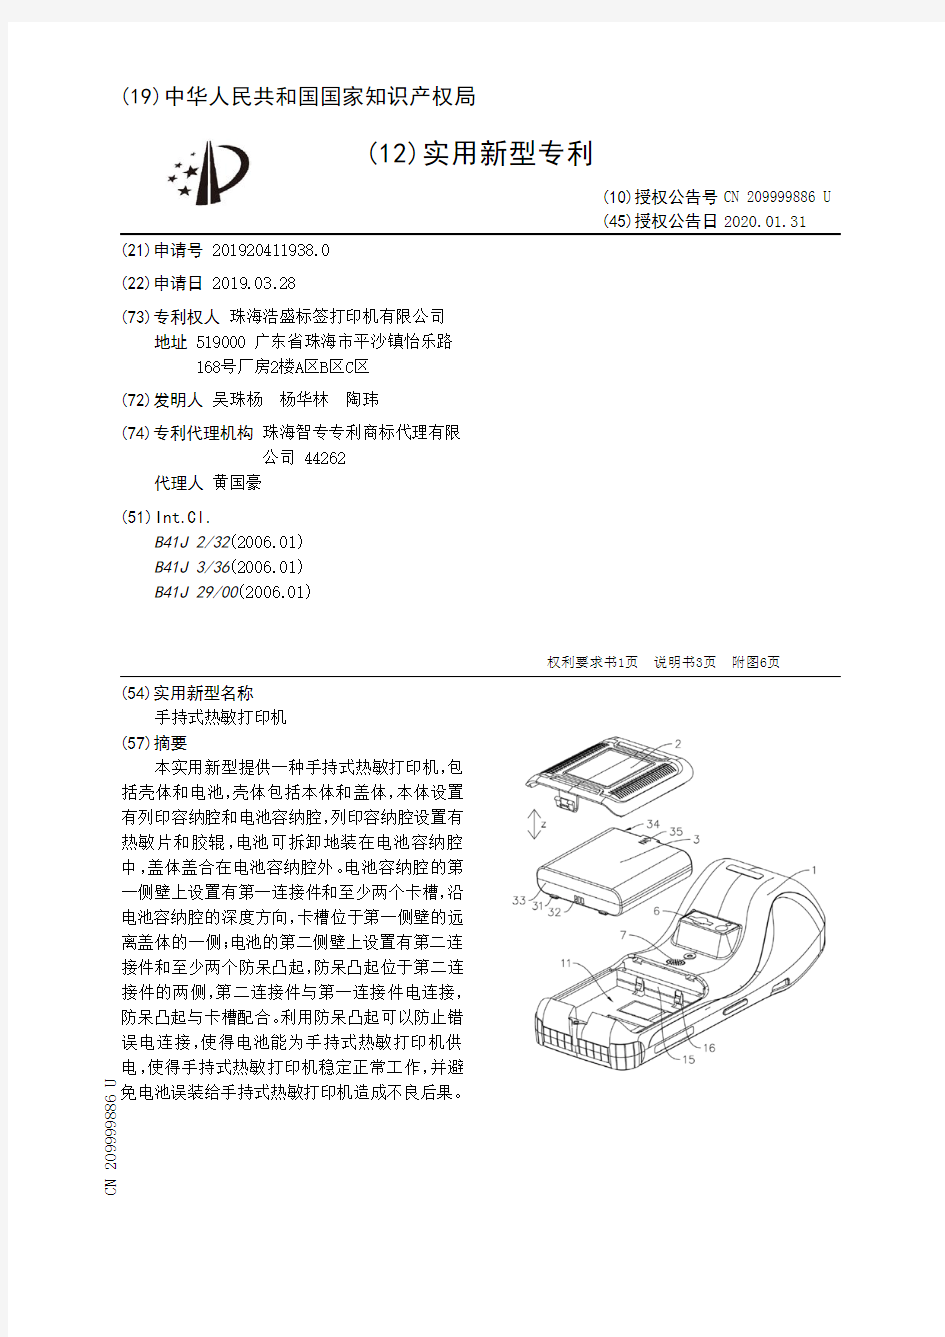 【CN209999886U】手持式热敏打印机【专利】